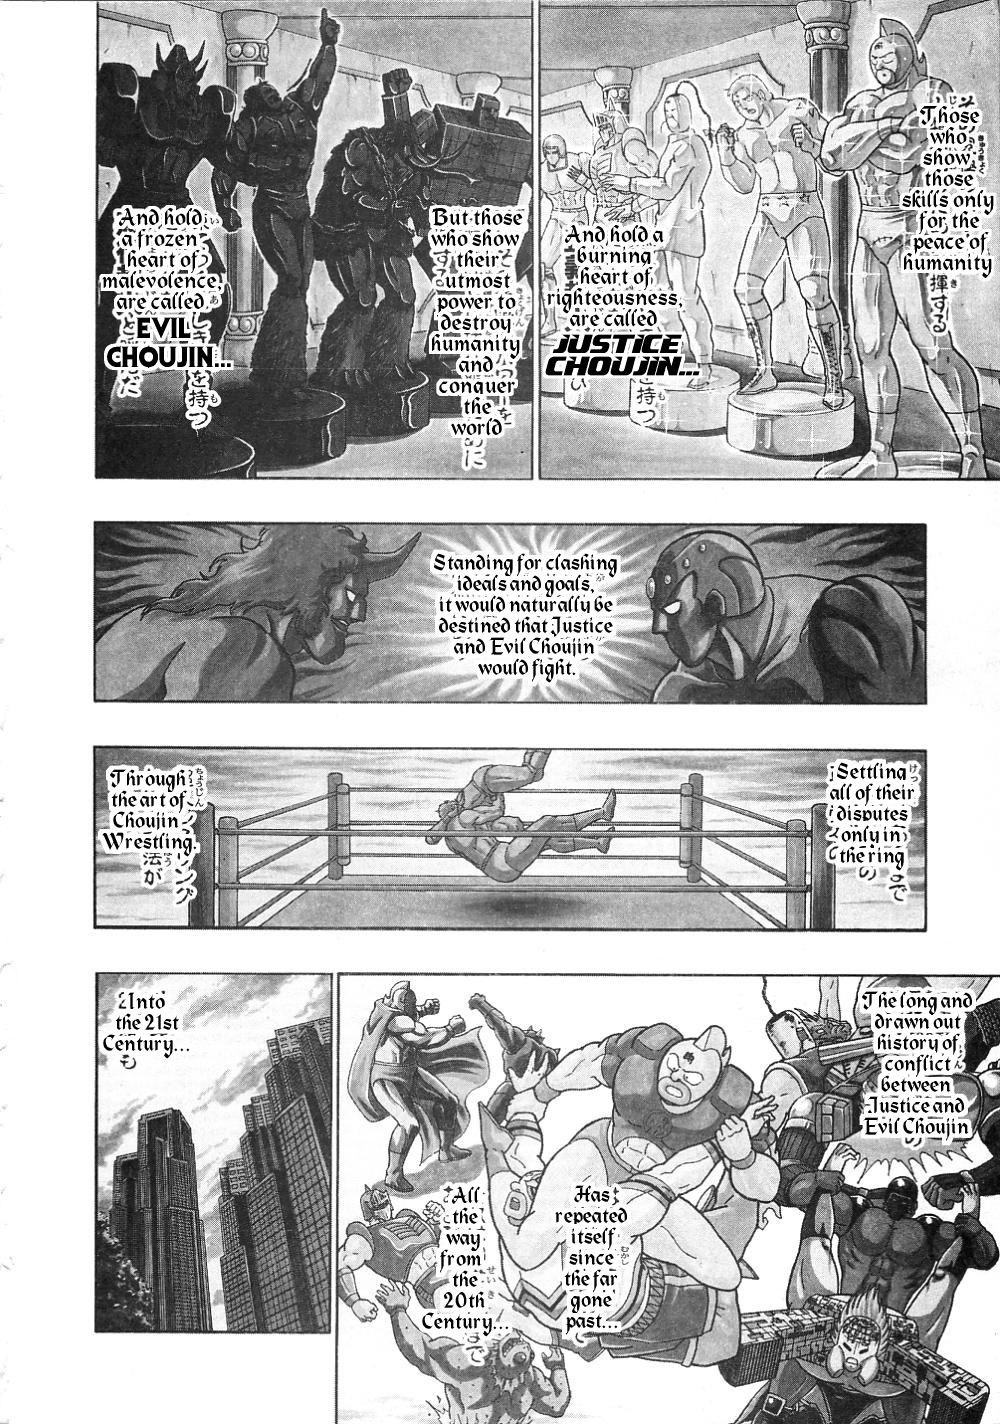 Kinnikuman II Sei: All Choujin Daishingeki Vol. 1 Ch. 1 Defeat the Evil Choujin Puripuriman!